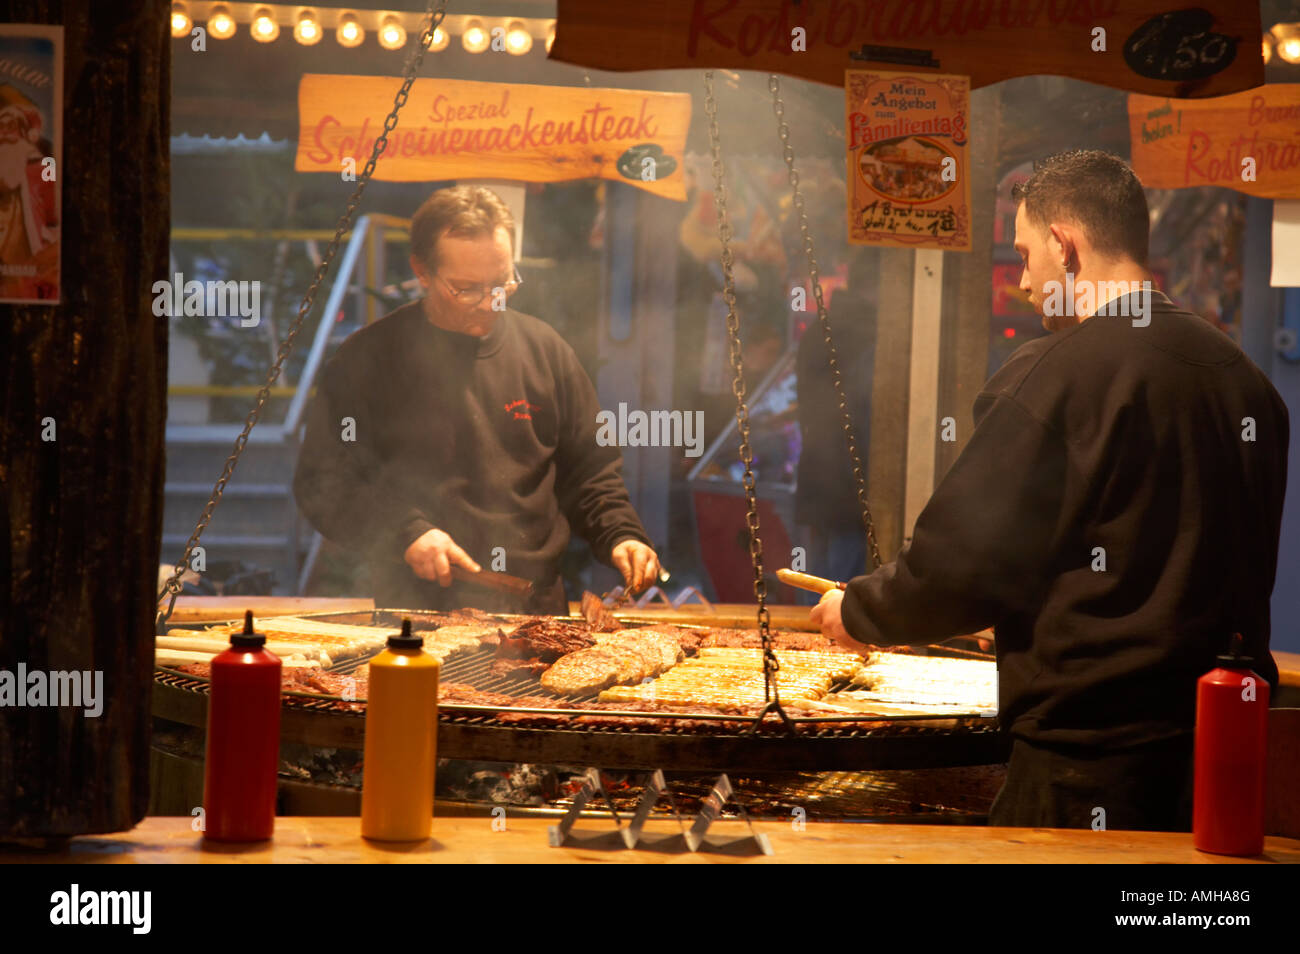 Zwei Männer auf ein Fast-Food-Fleisch verkaufen Stall Koch Rostbratwurst und Steak auf einem riesigen offenen grill Spandau Weihnachten Markt Berlin Stockfoto